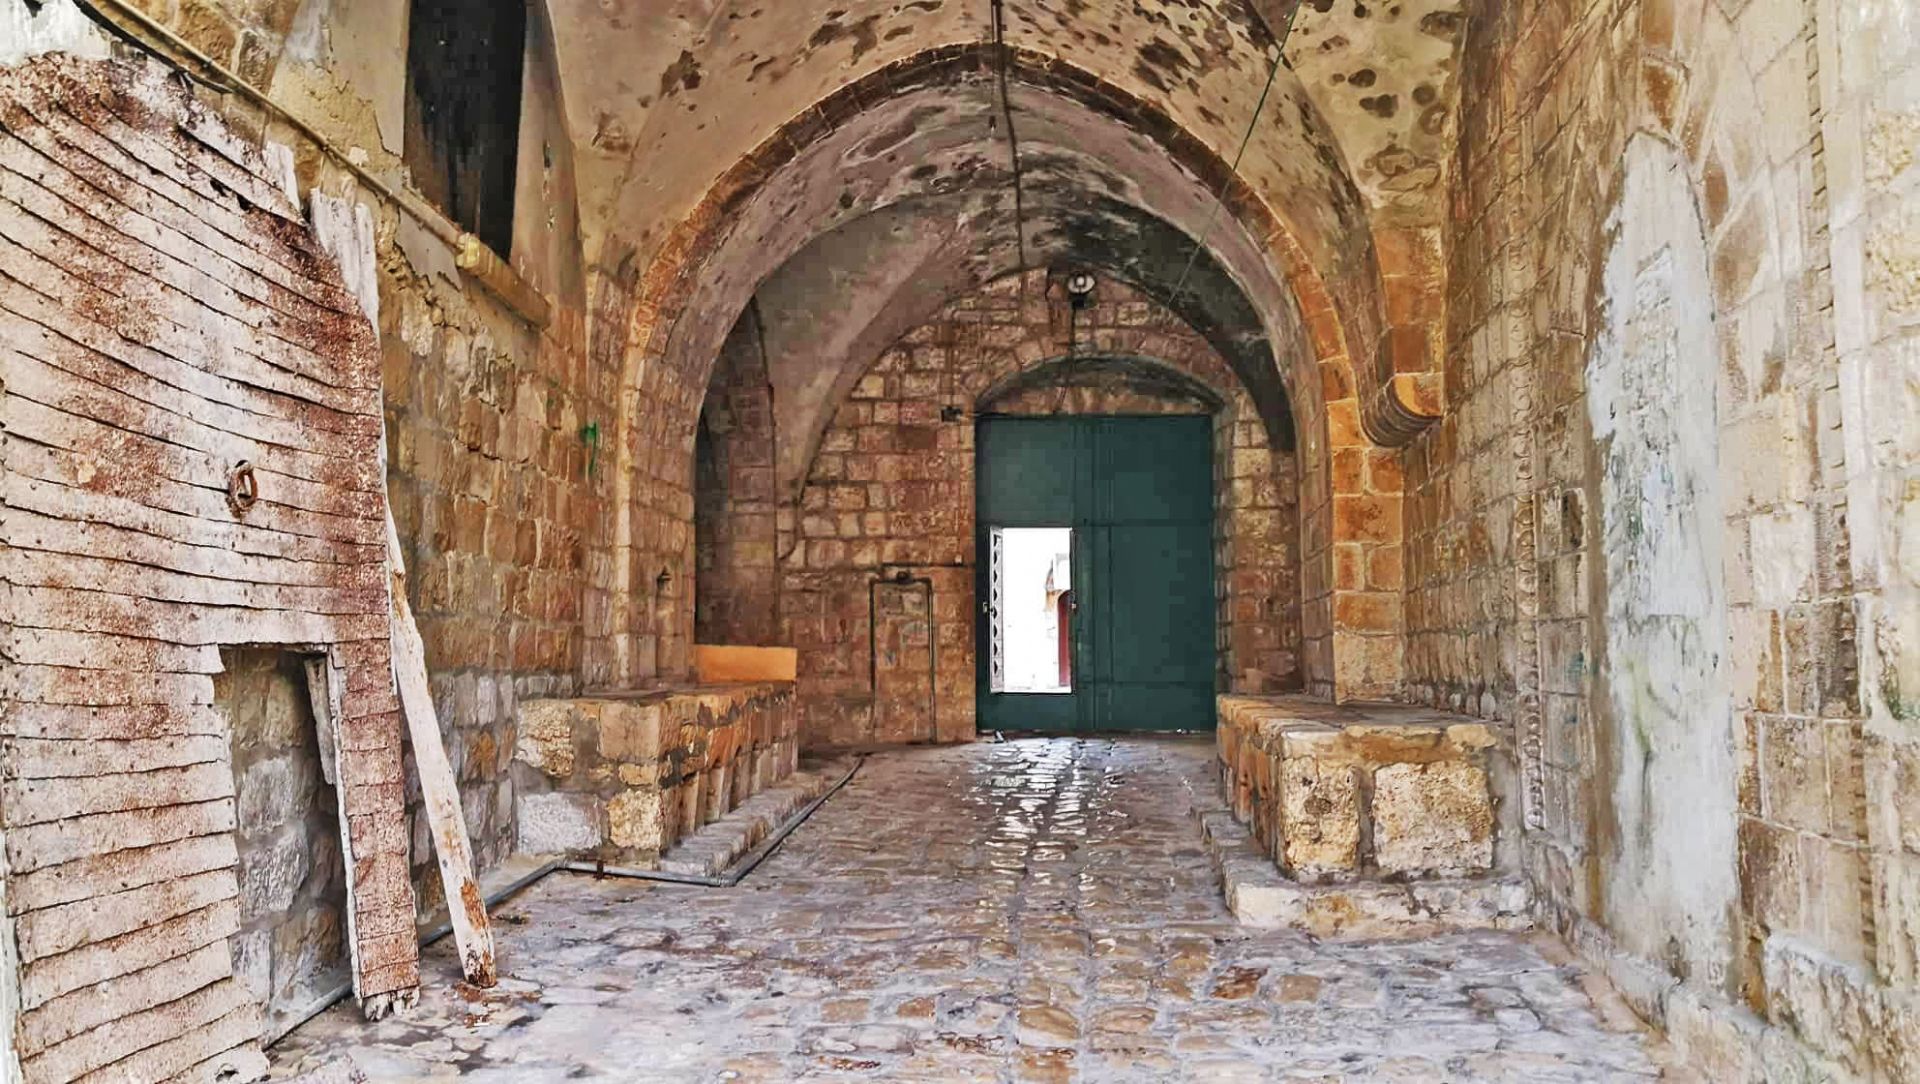 مدخل القصر من الداخل وتظهر البوابة القديمة والبلاط السلطاني